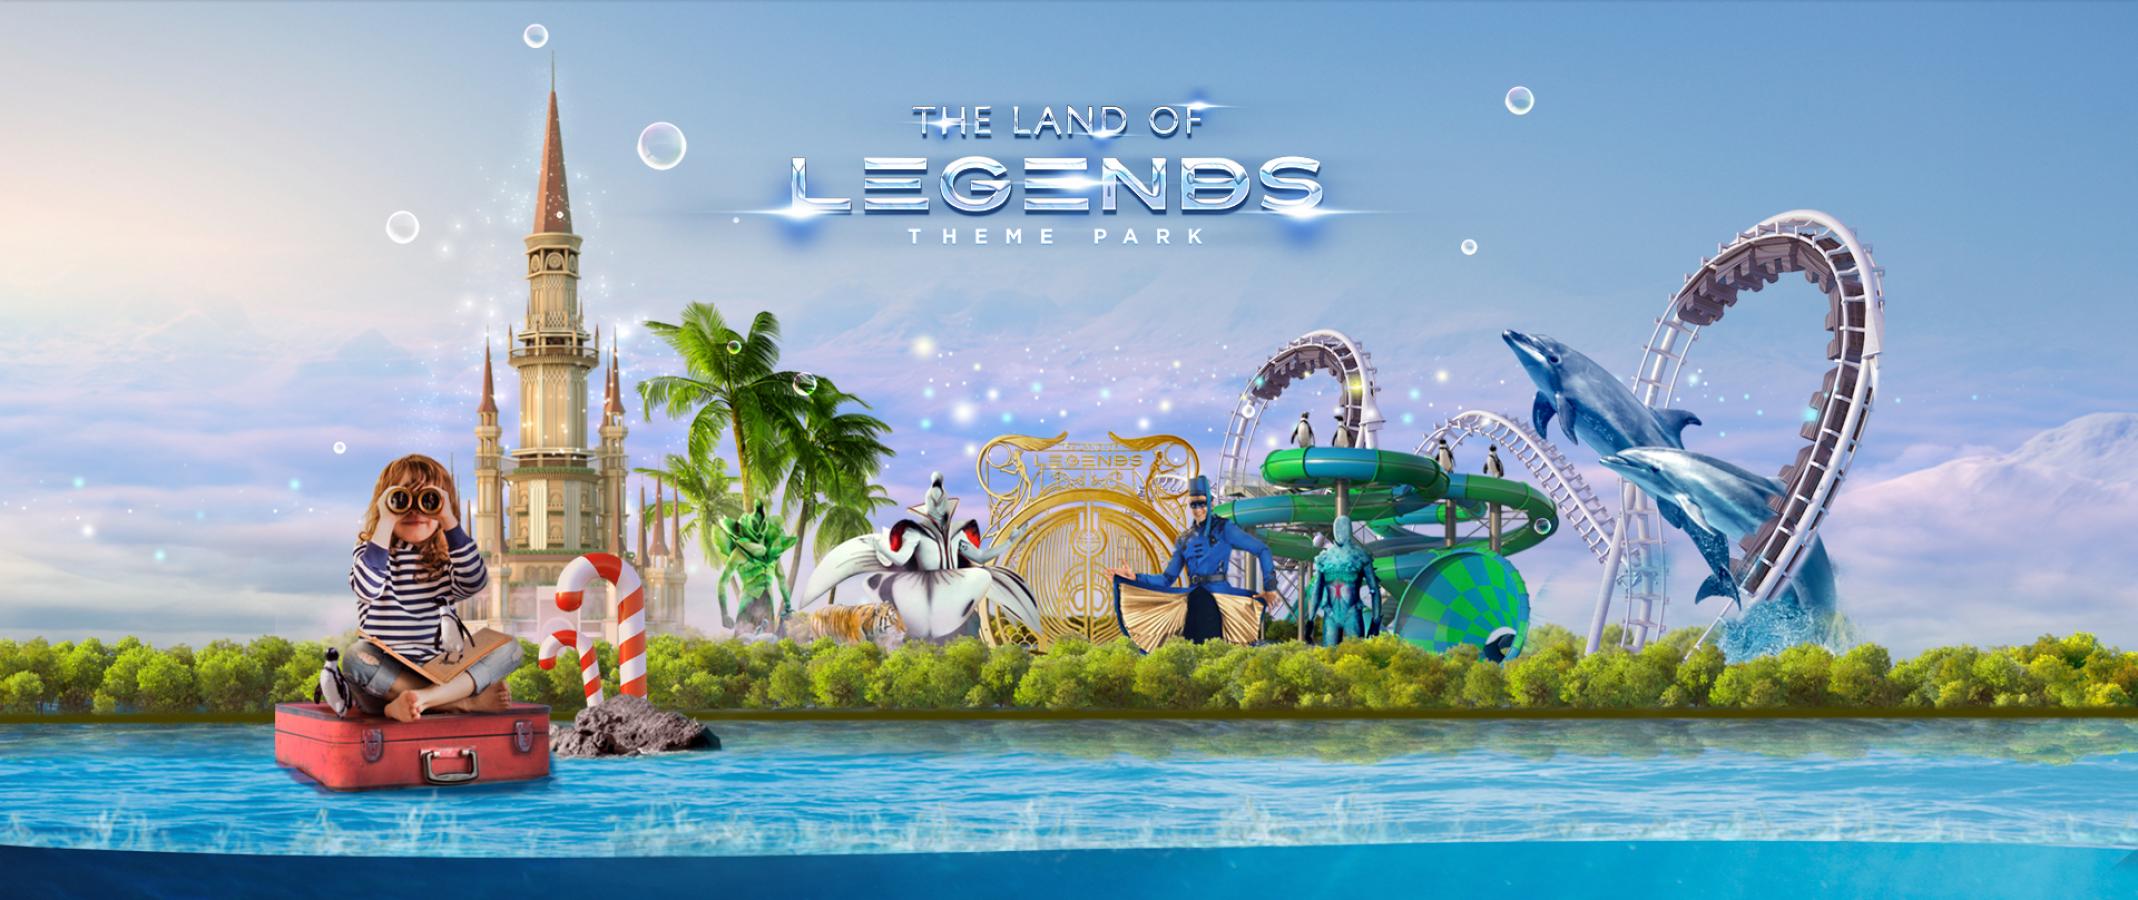 Несколько концертов пройдёт в "The Land of Legends" до конца июня